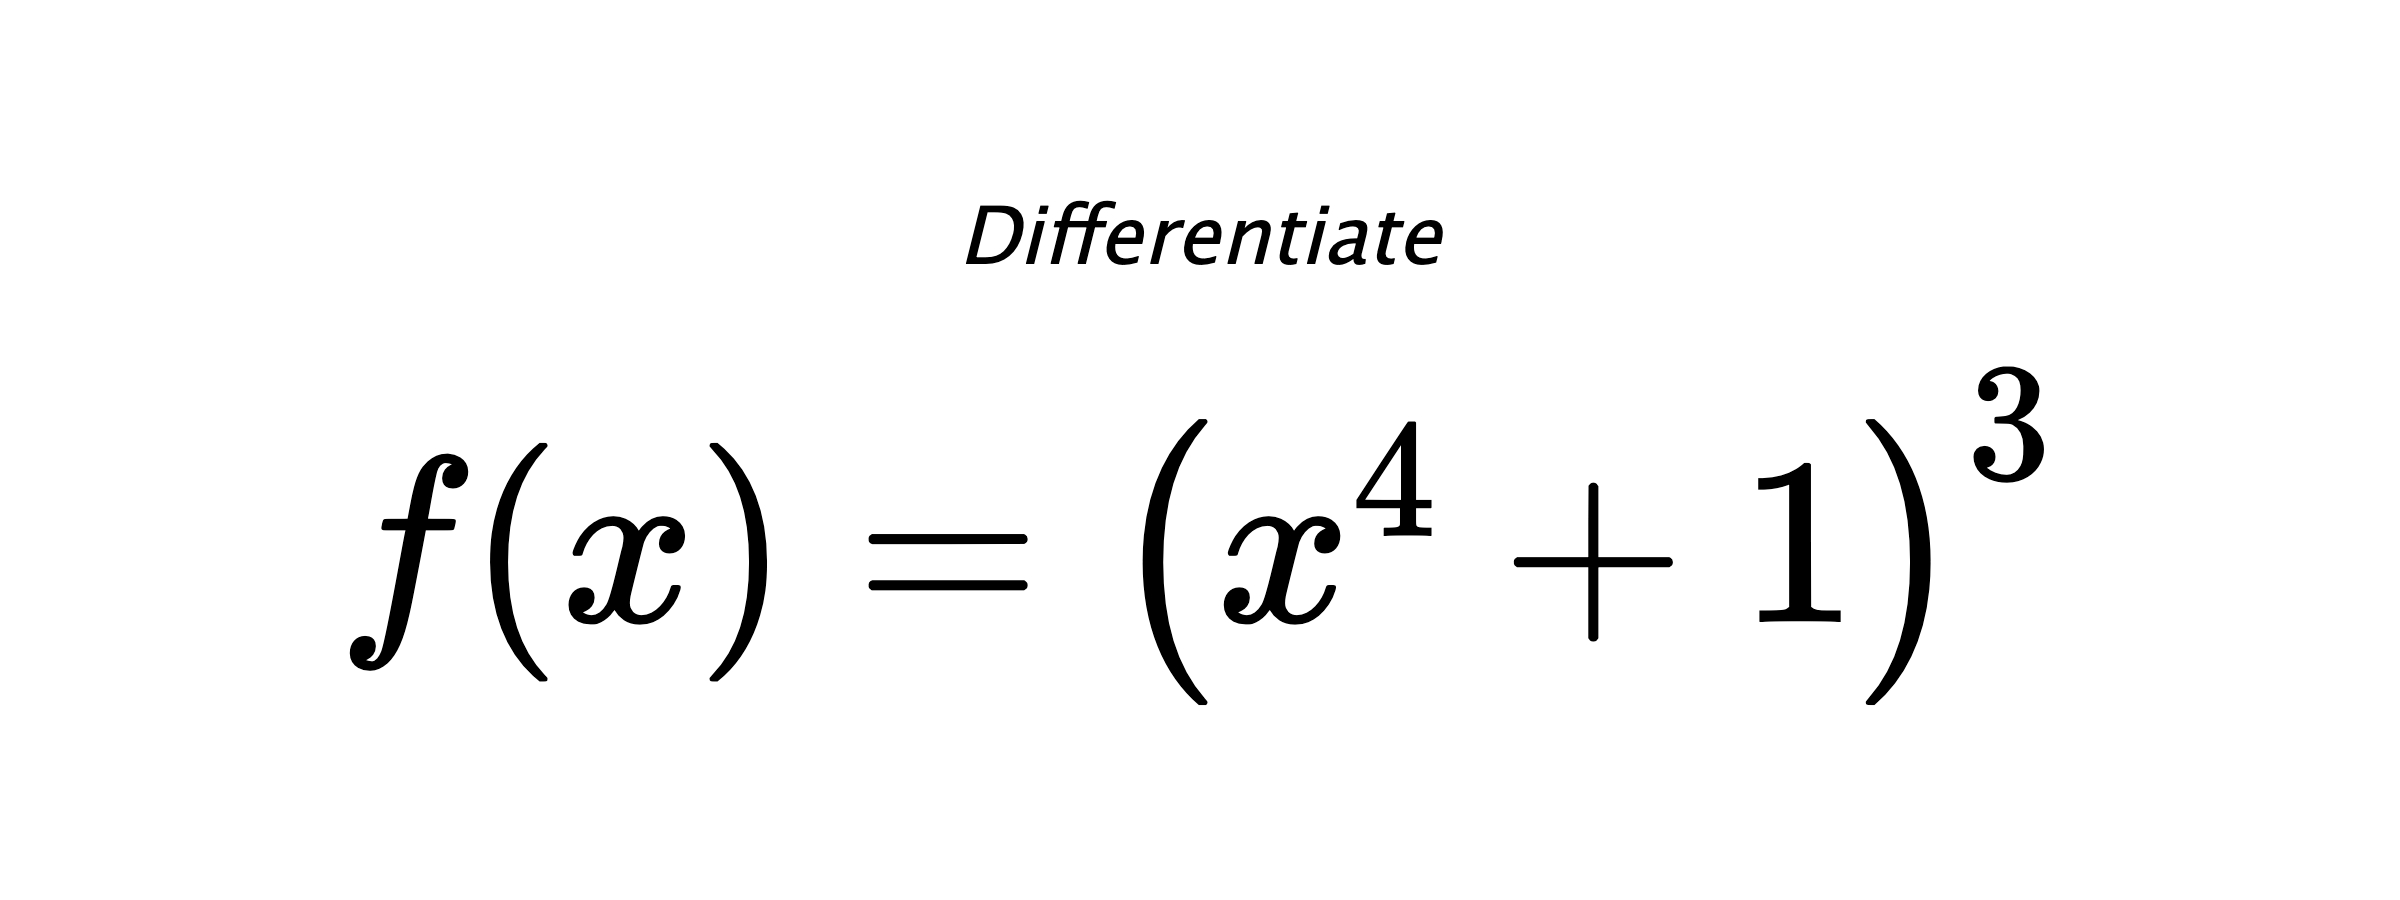 Differentiate $ f(x) = \left(x^{4} + 1\right)^{3} $